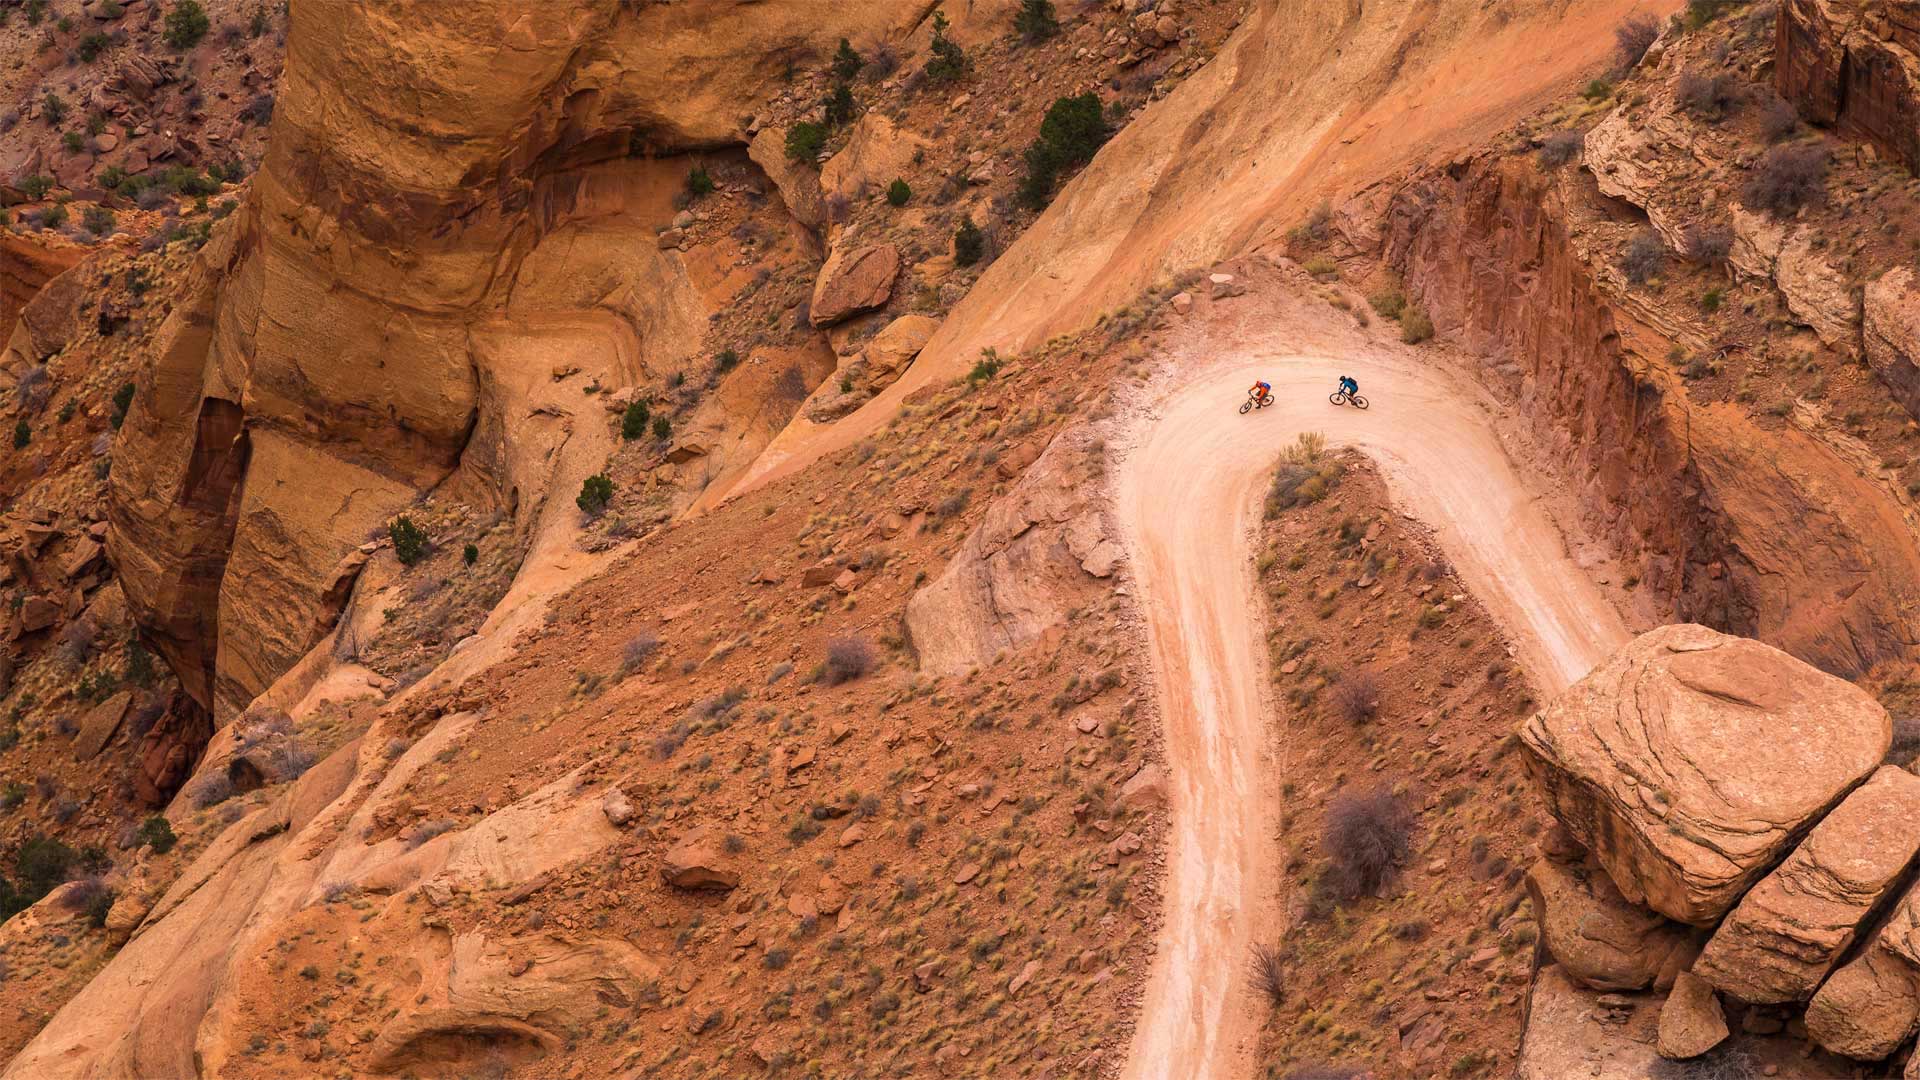 シェーファー トレイルを行くマウンテン バイク 米国ユタ州 キャニオンランズ国立公園 Bing日替わり画像